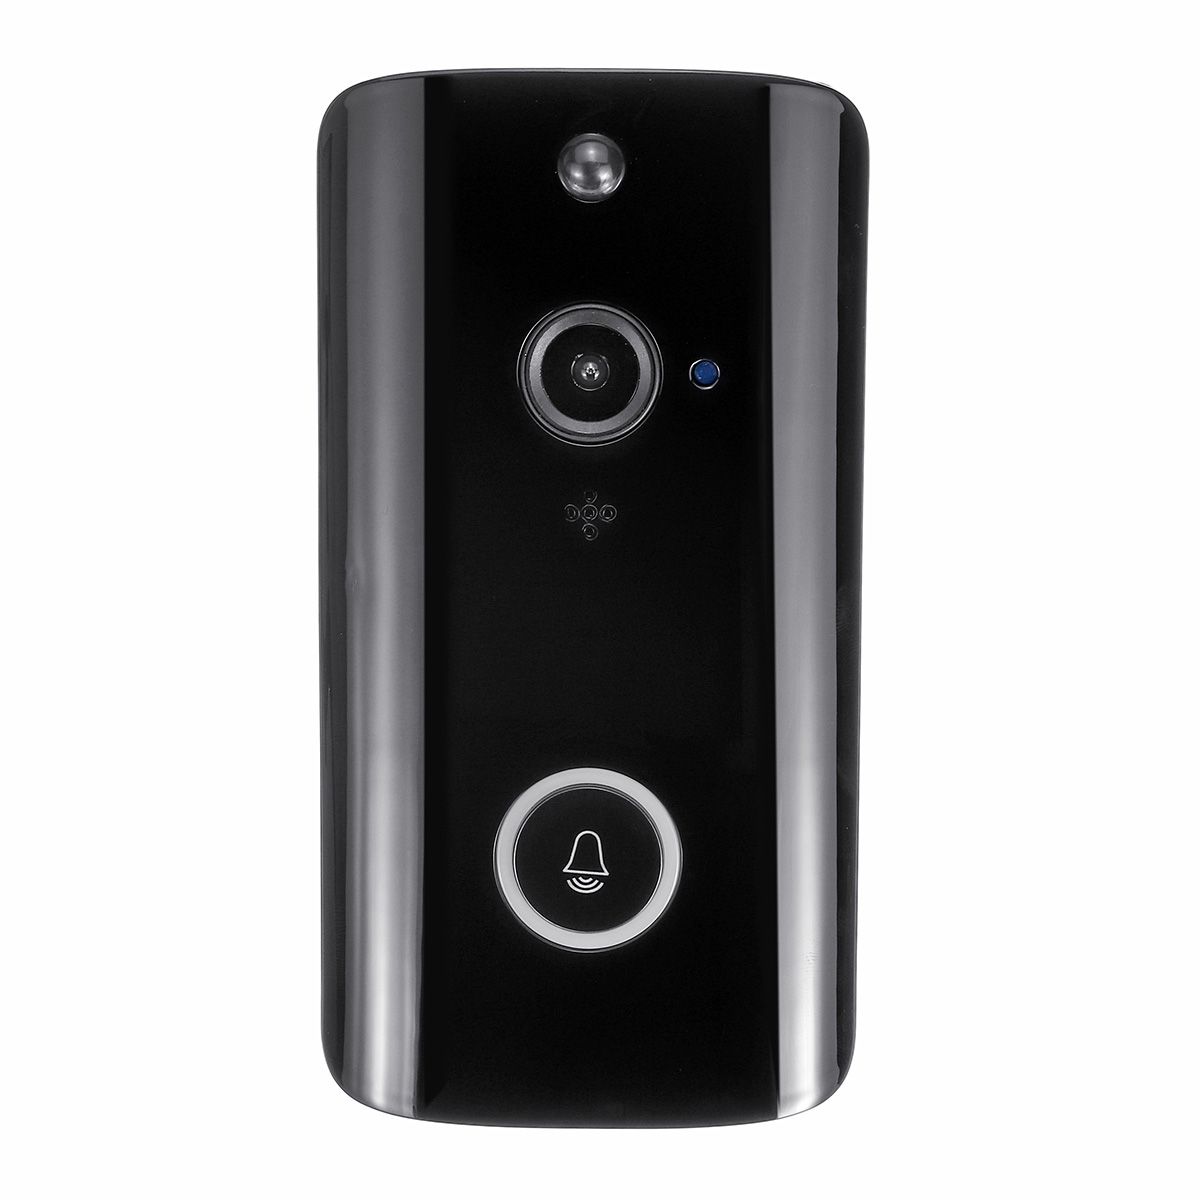 M9-Video-Doorbell-720P-15fps-100MP-WIFI-XSH-CAM-UBELL-APP-Two-way-Voice-Intercom-1446279